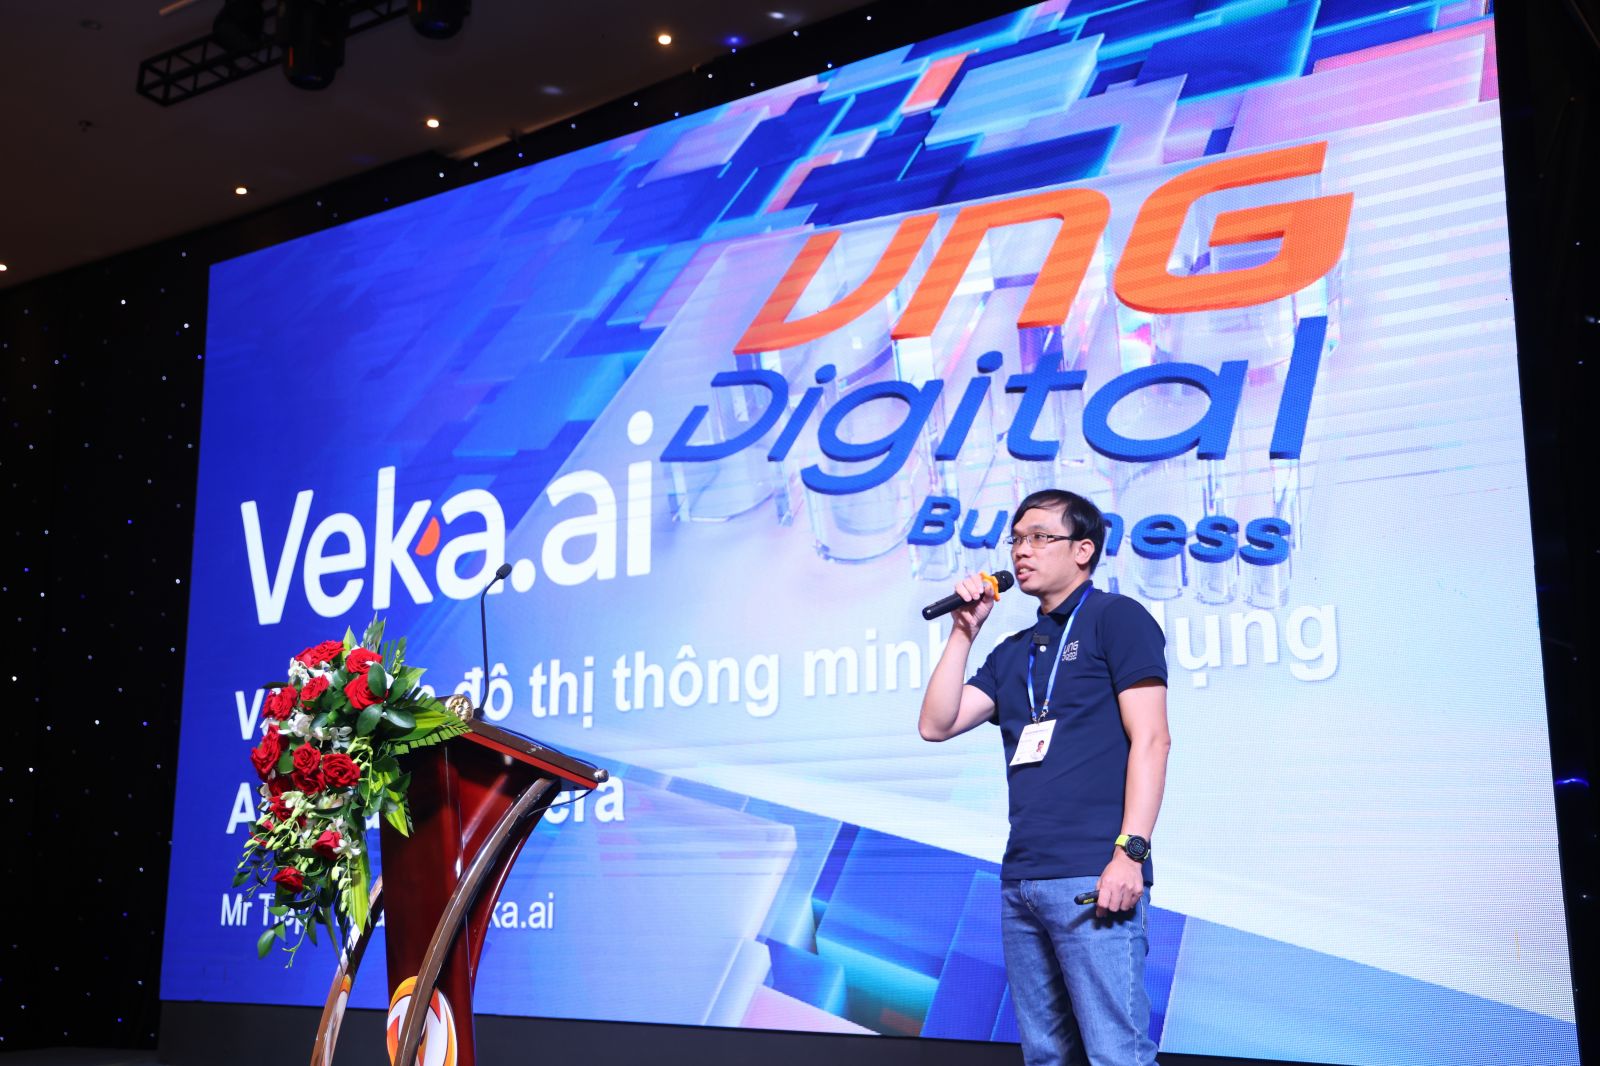 Ông Vũ Văn Tiệp - Giám đốc sản phẩm Veka.ai, VNG Digital Business chia sẻ tại sự kiện